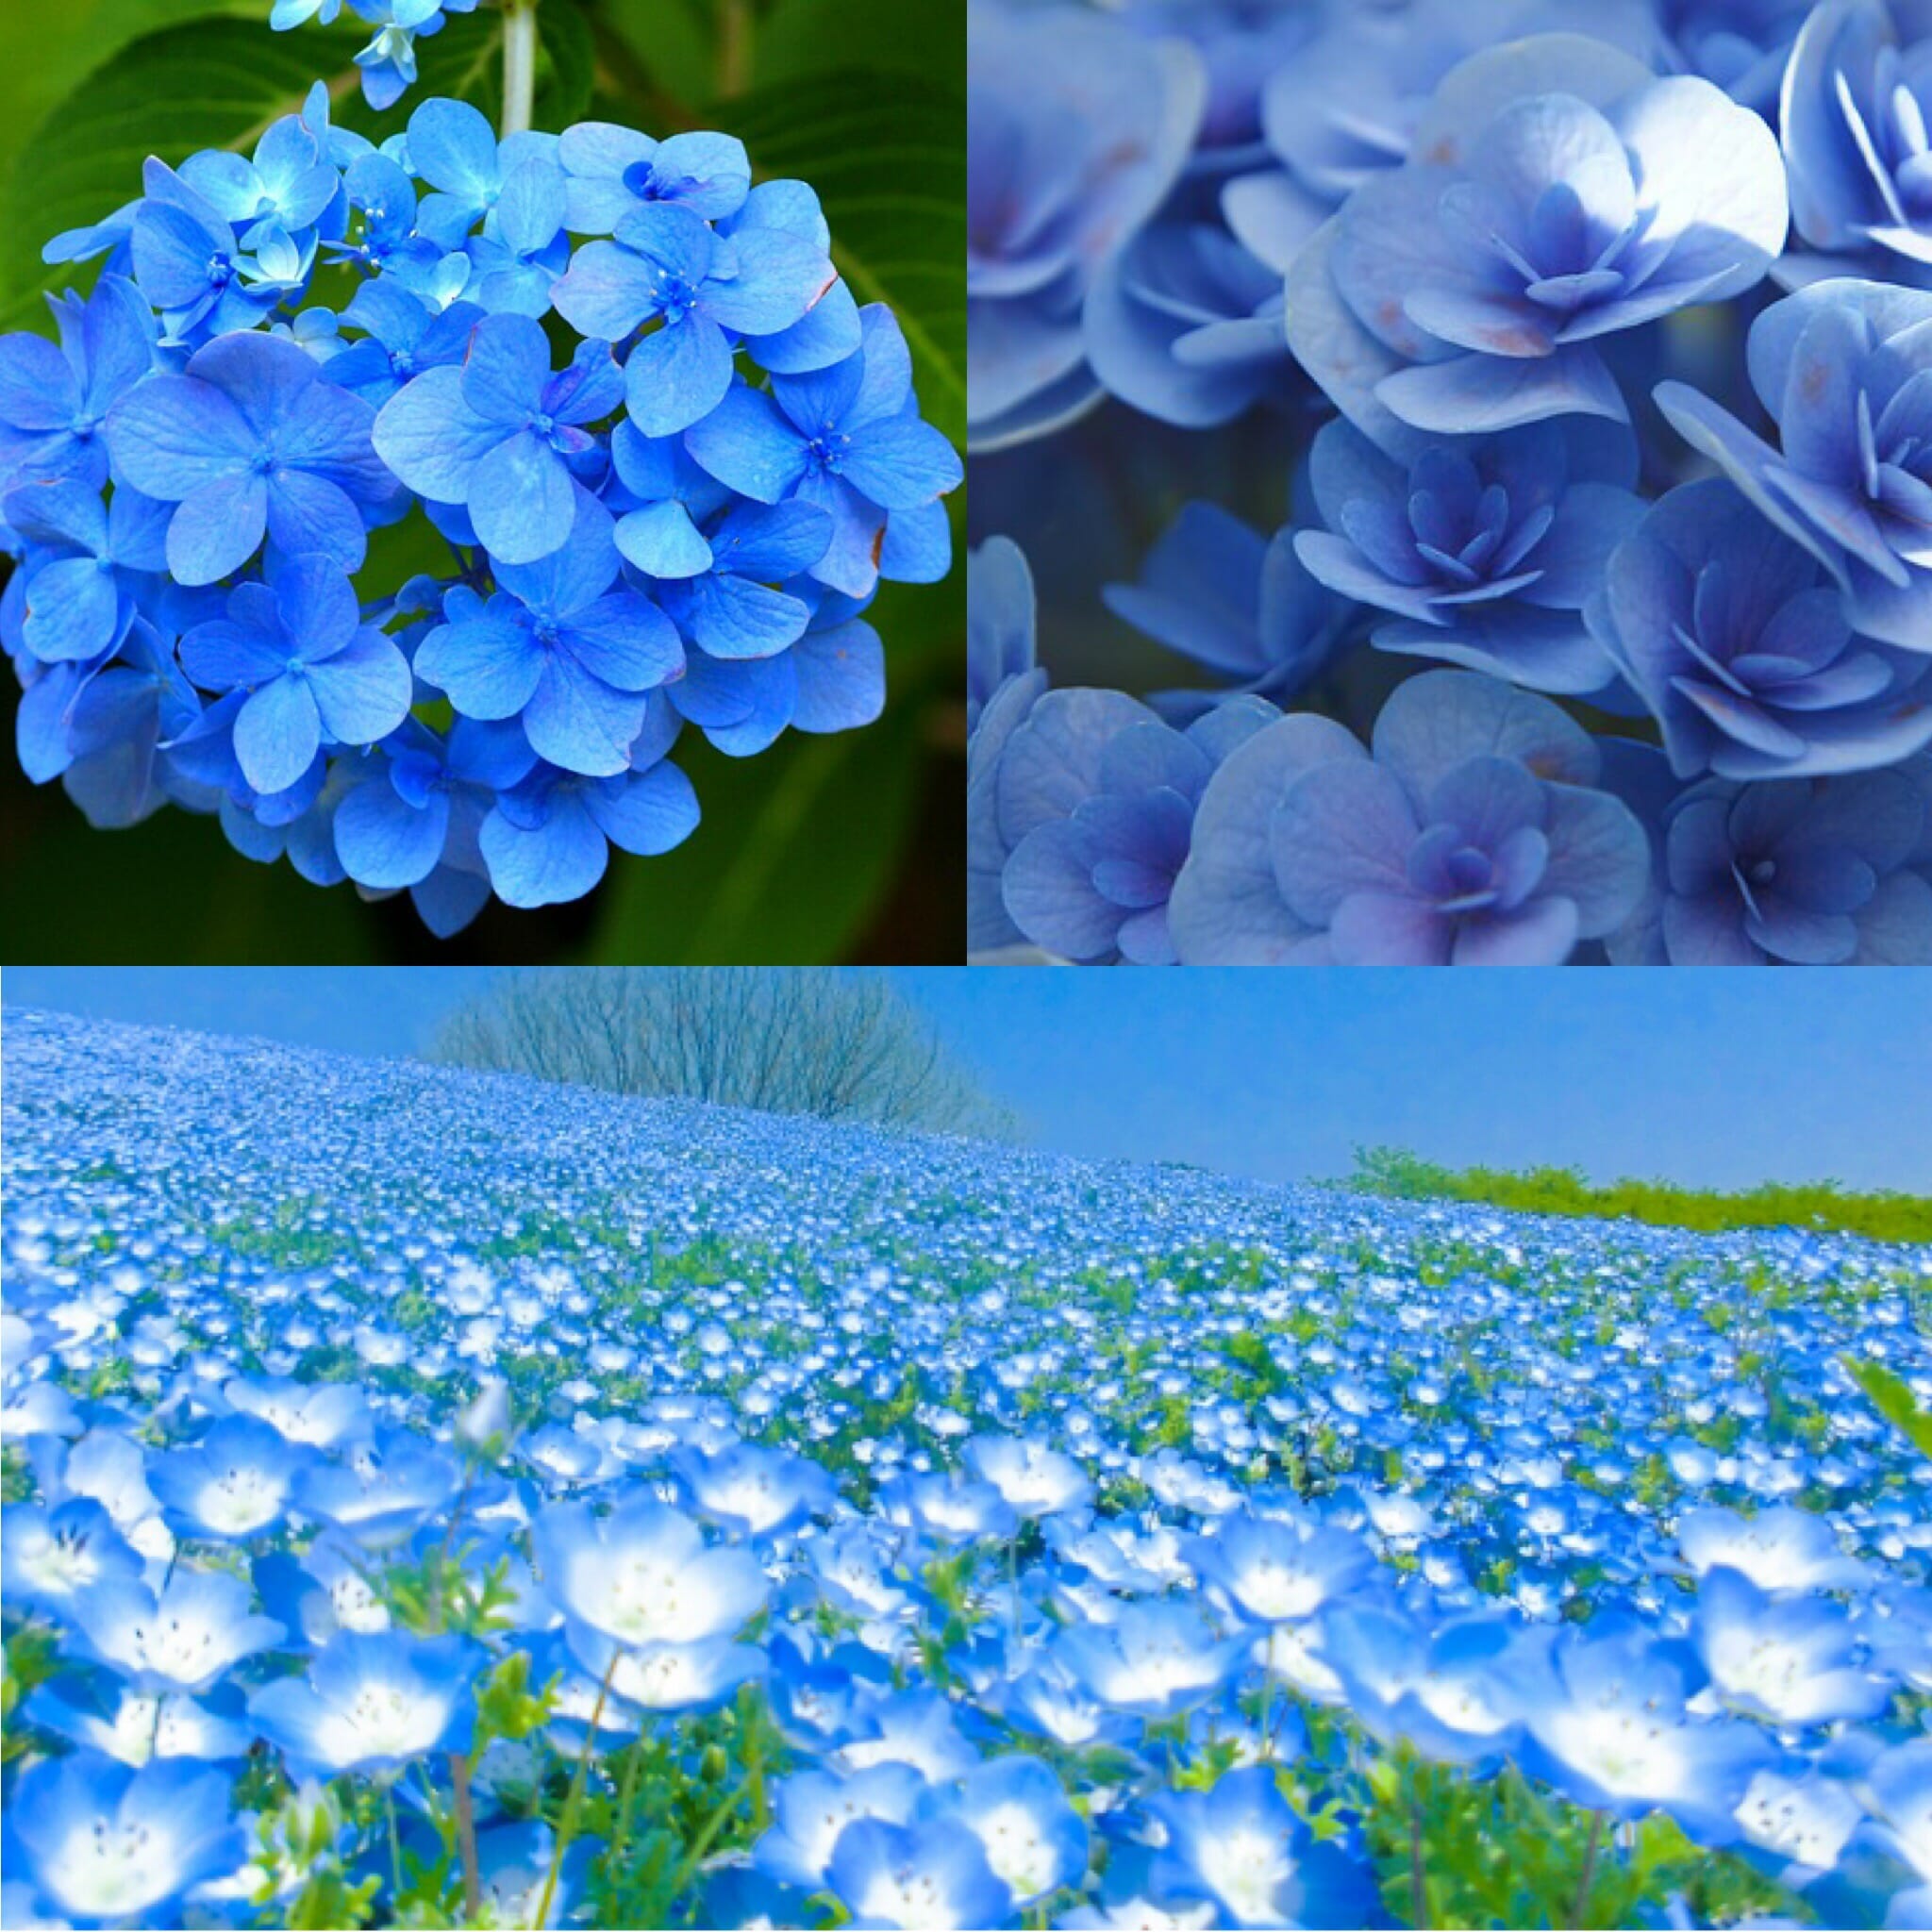 やさしい色合いの青いお花を選ぶとき〜今日のハーブ🌿